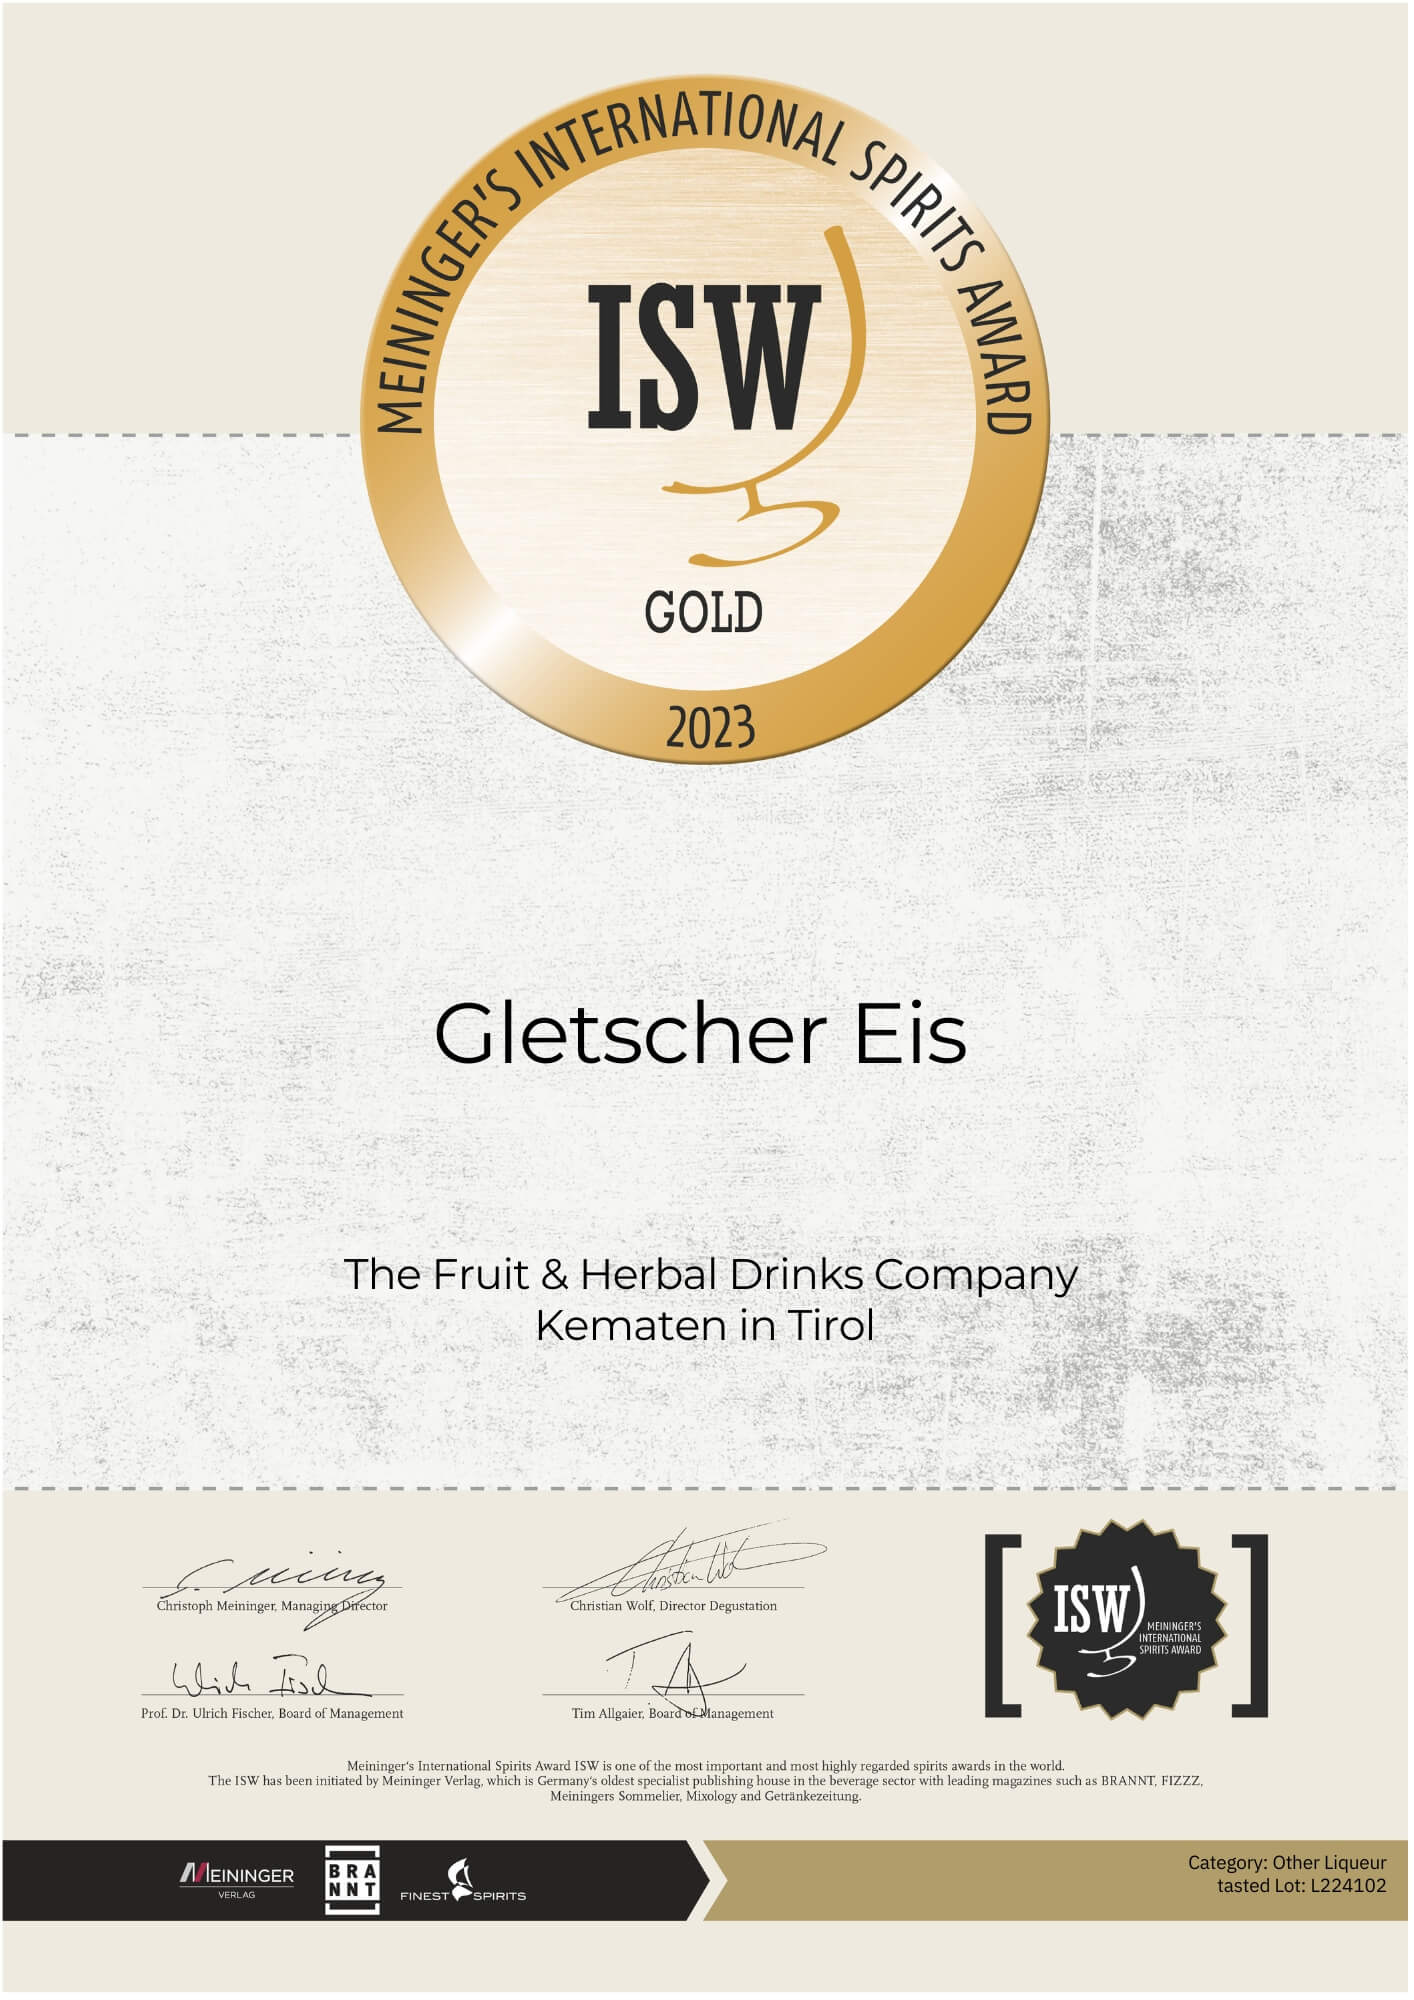 Certificate of award-winning GletscherEis Fire Liqueur of the Baumann Distillery